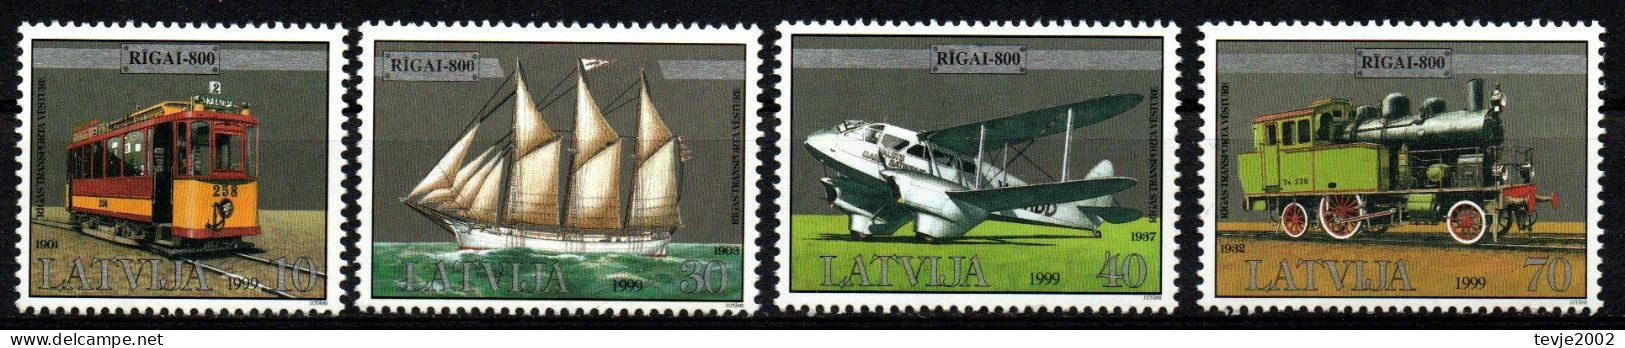 Lettland Latvija 1999 - Mi.Nr. 501 - 504 - Postfrisch MNH - Lettonie